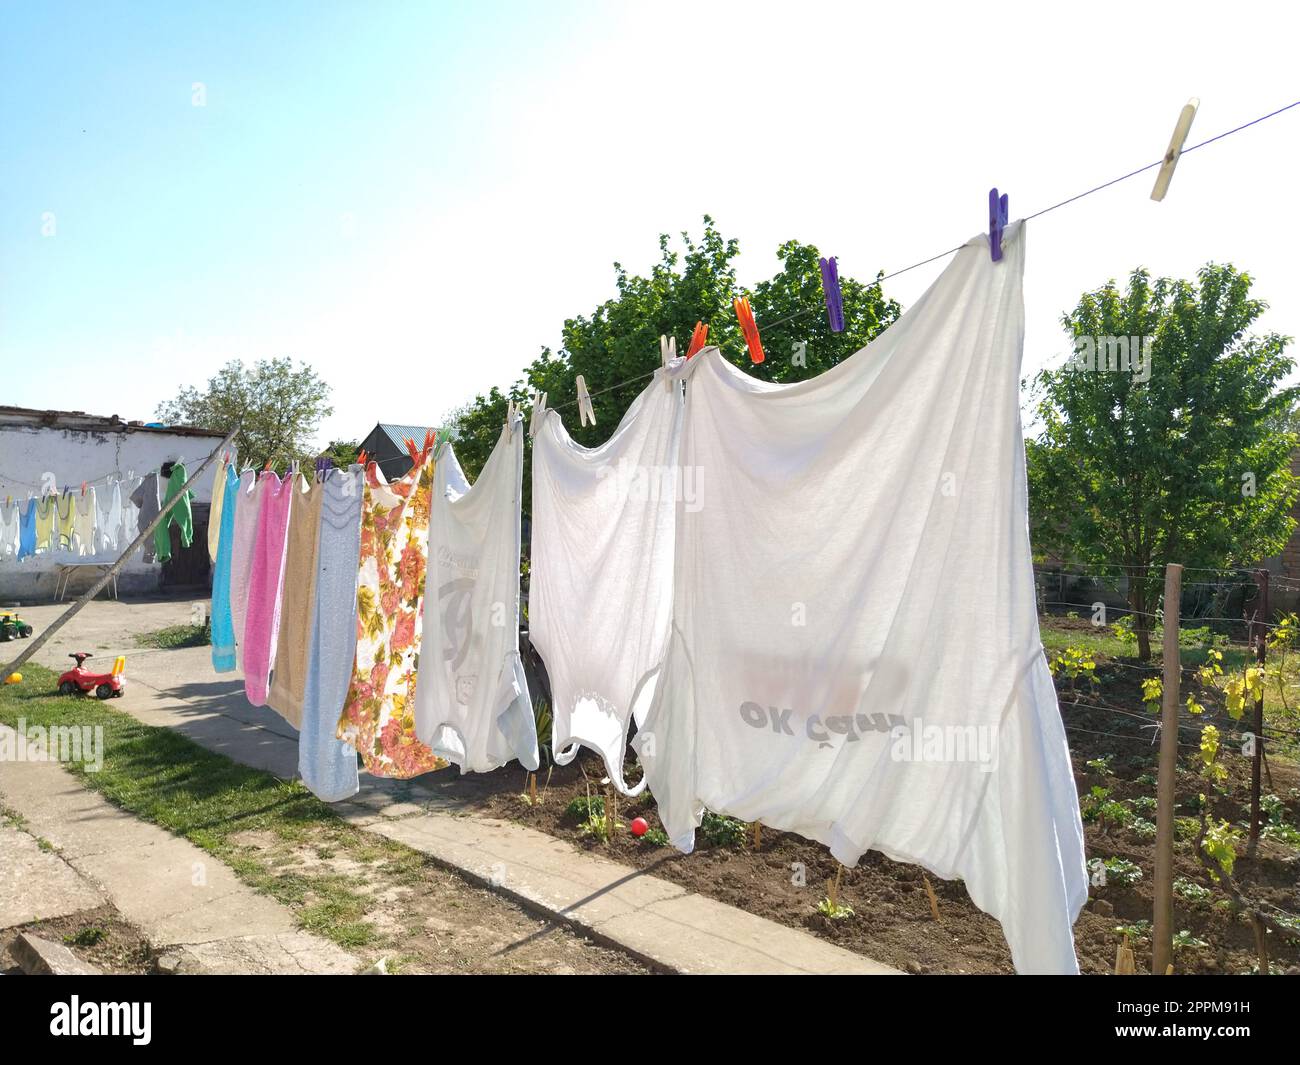 Sremska Mitrovica, Serbia 10 luglio 2020, asciugamani e vestiti asciutti su una corda. La casalinga si preoccupa. Il panno bagnato è appeso ai clothespins per un'ulteriore asciugatura. un gran bucato Foto Stock